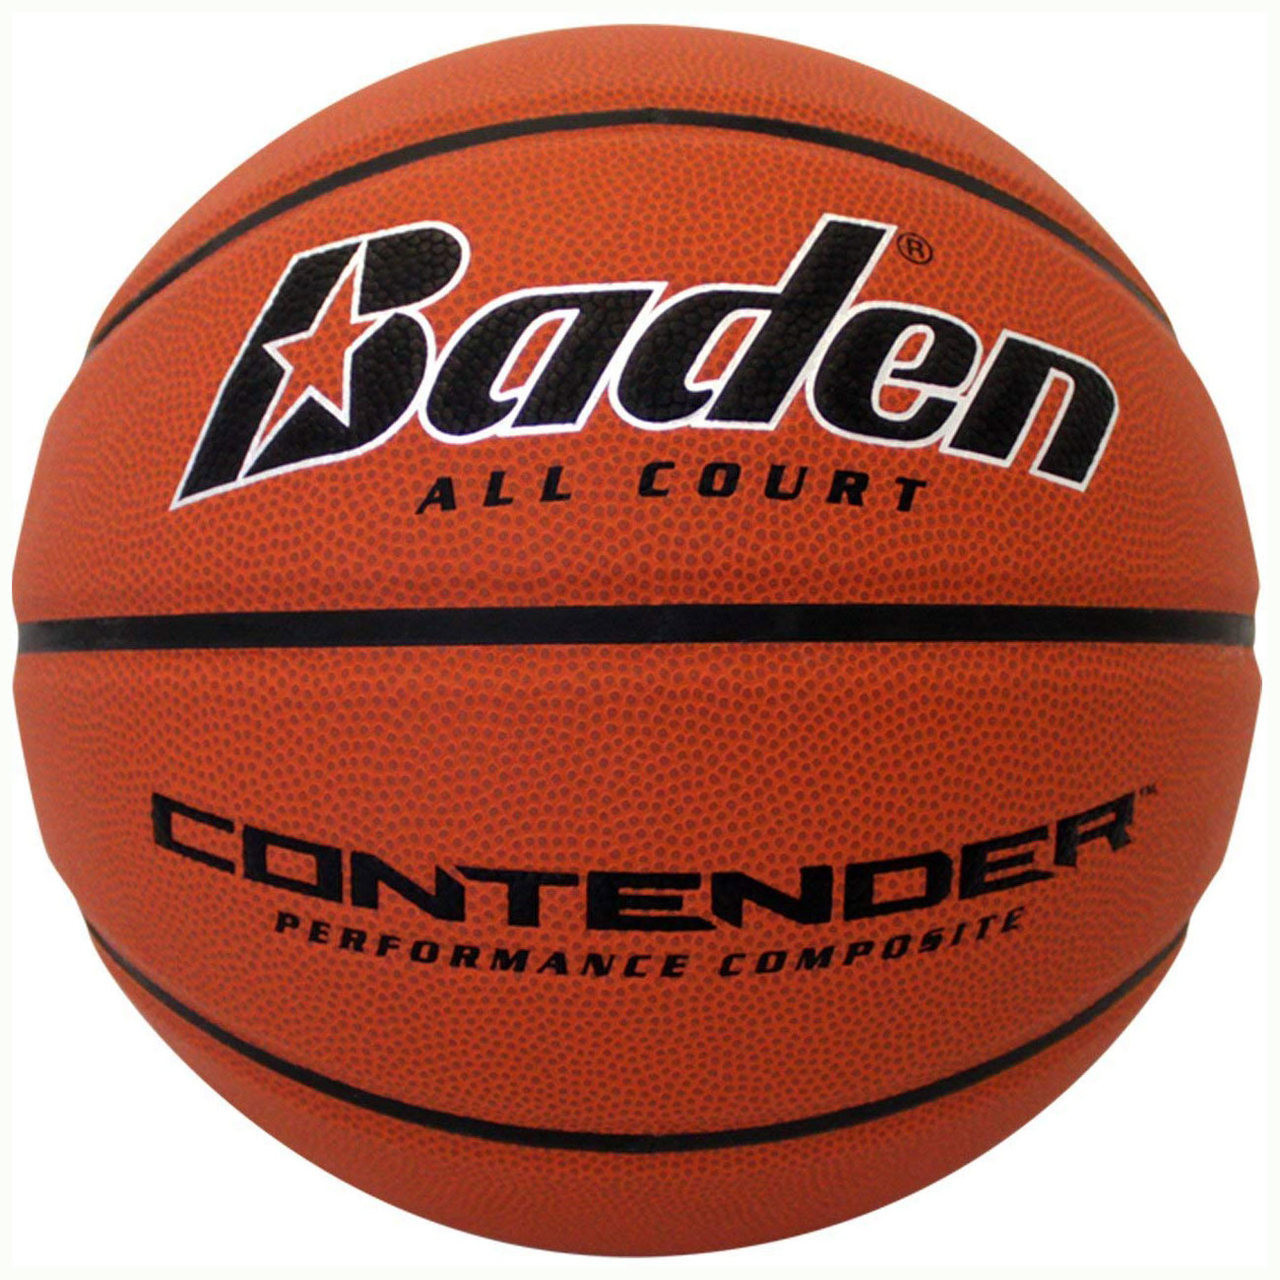 Baden Contender Composite Basketball